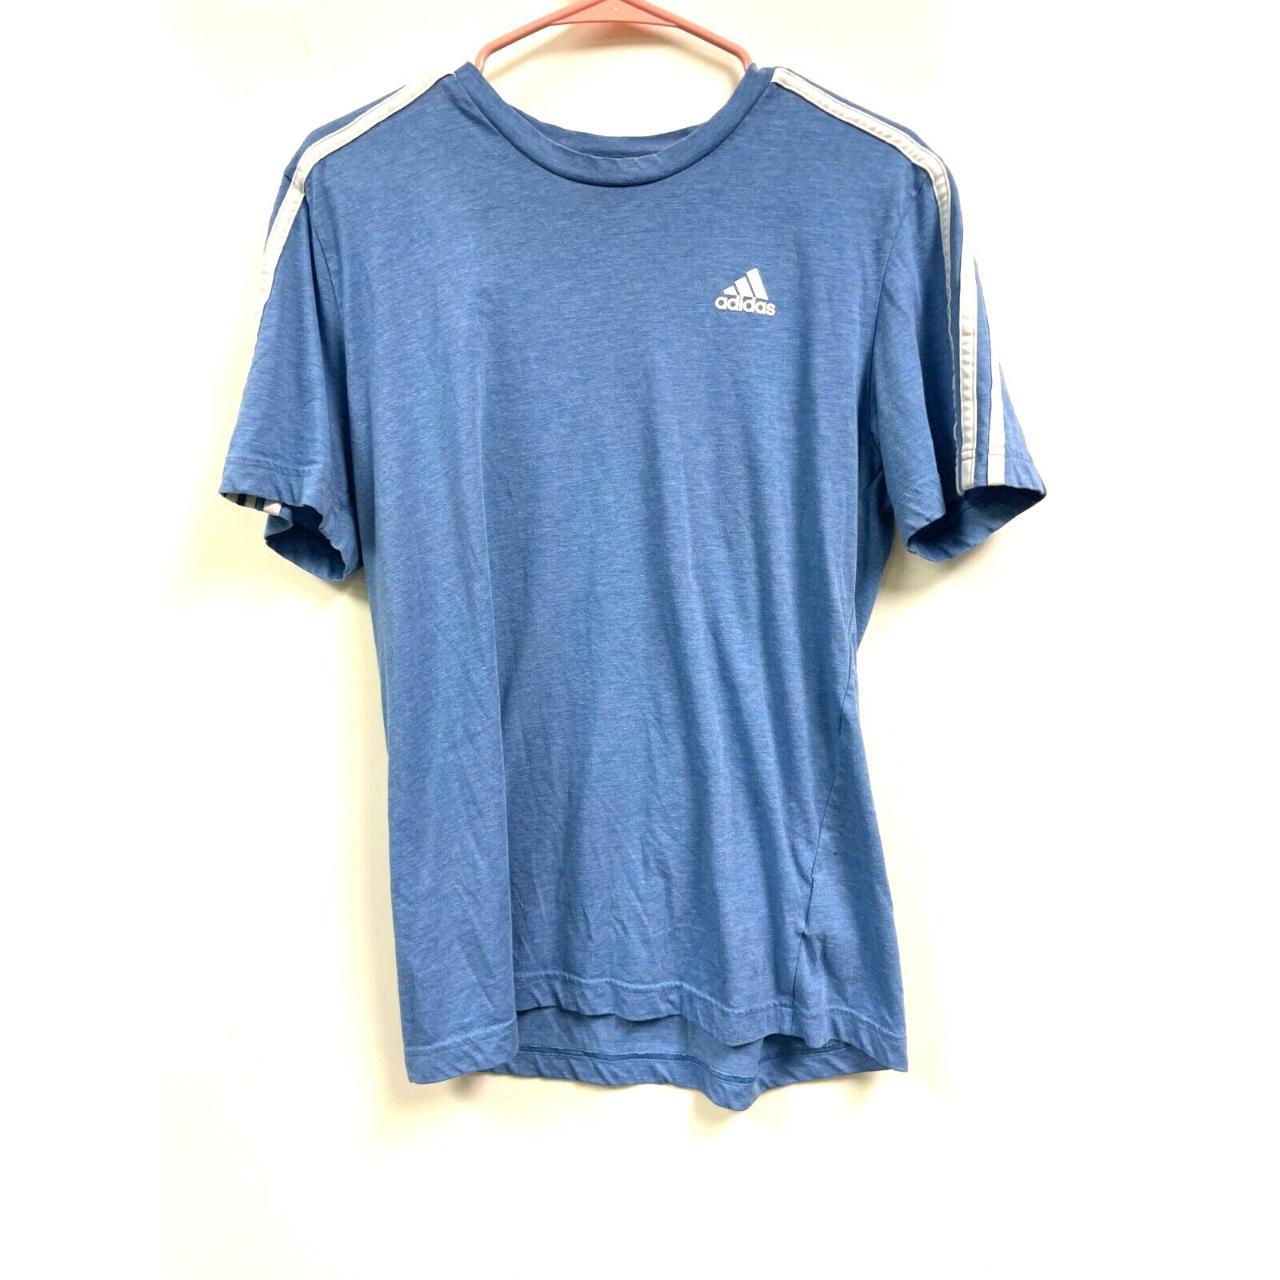 Adidas Men's Blue T-shirt | Depop